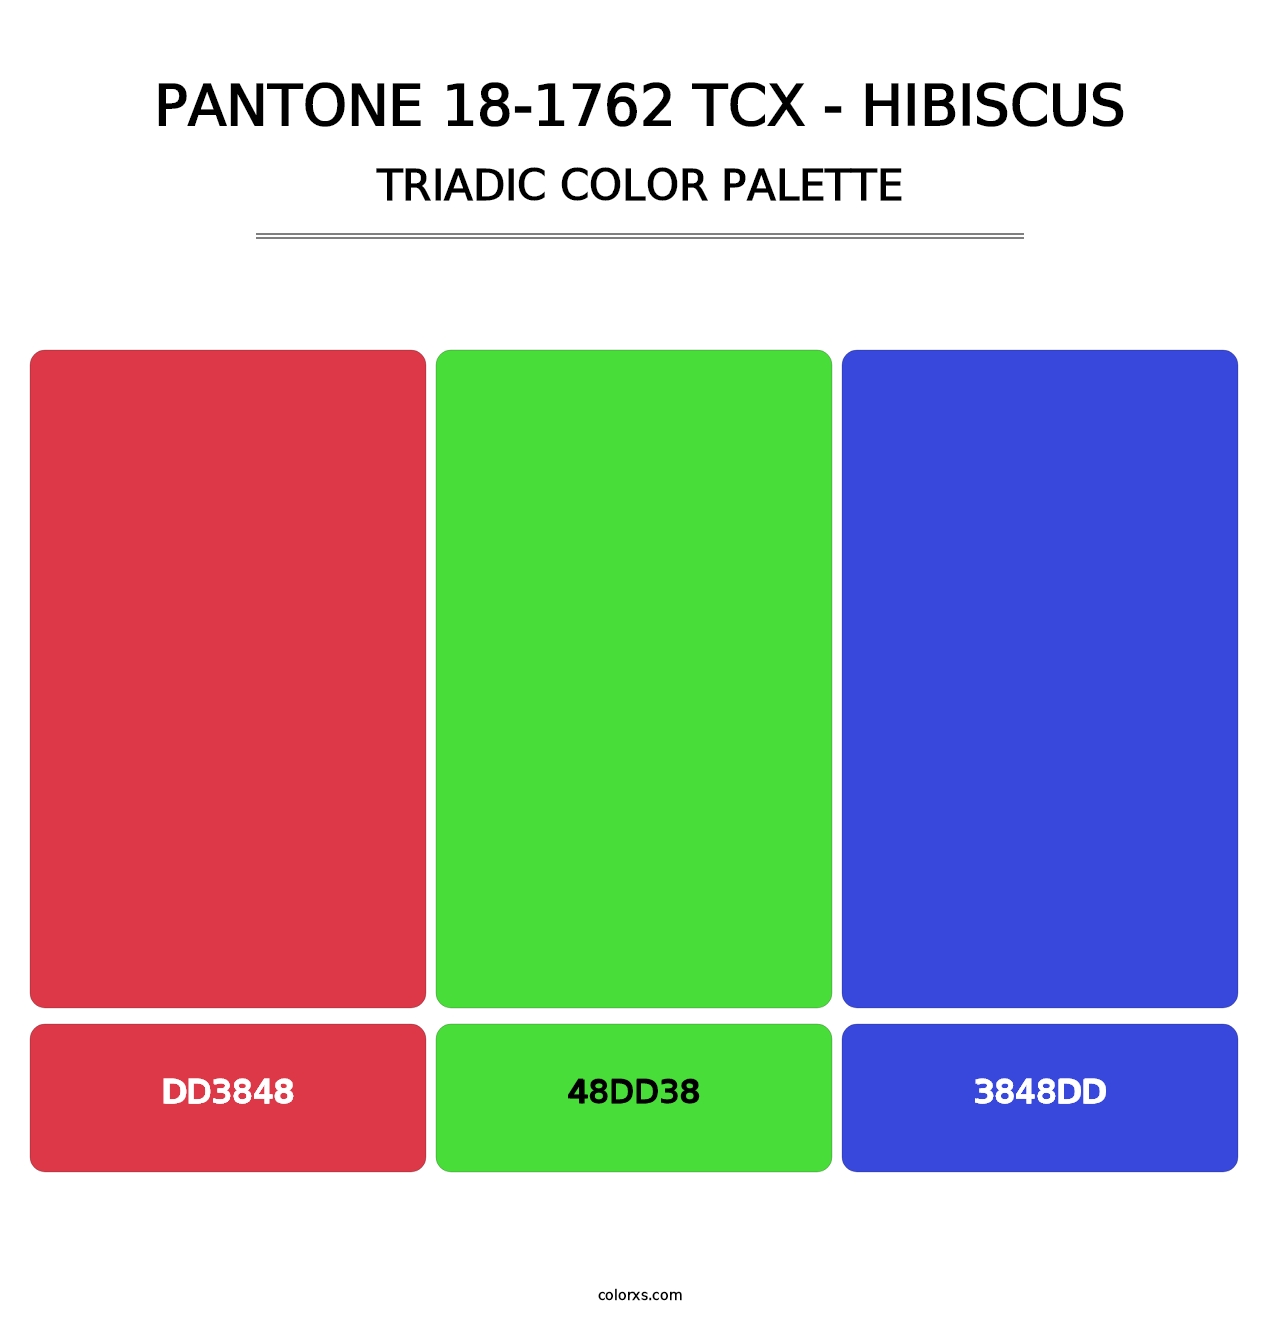 PANTONE 18-1762 TCX - Hibiscus - Triadic Color Palette